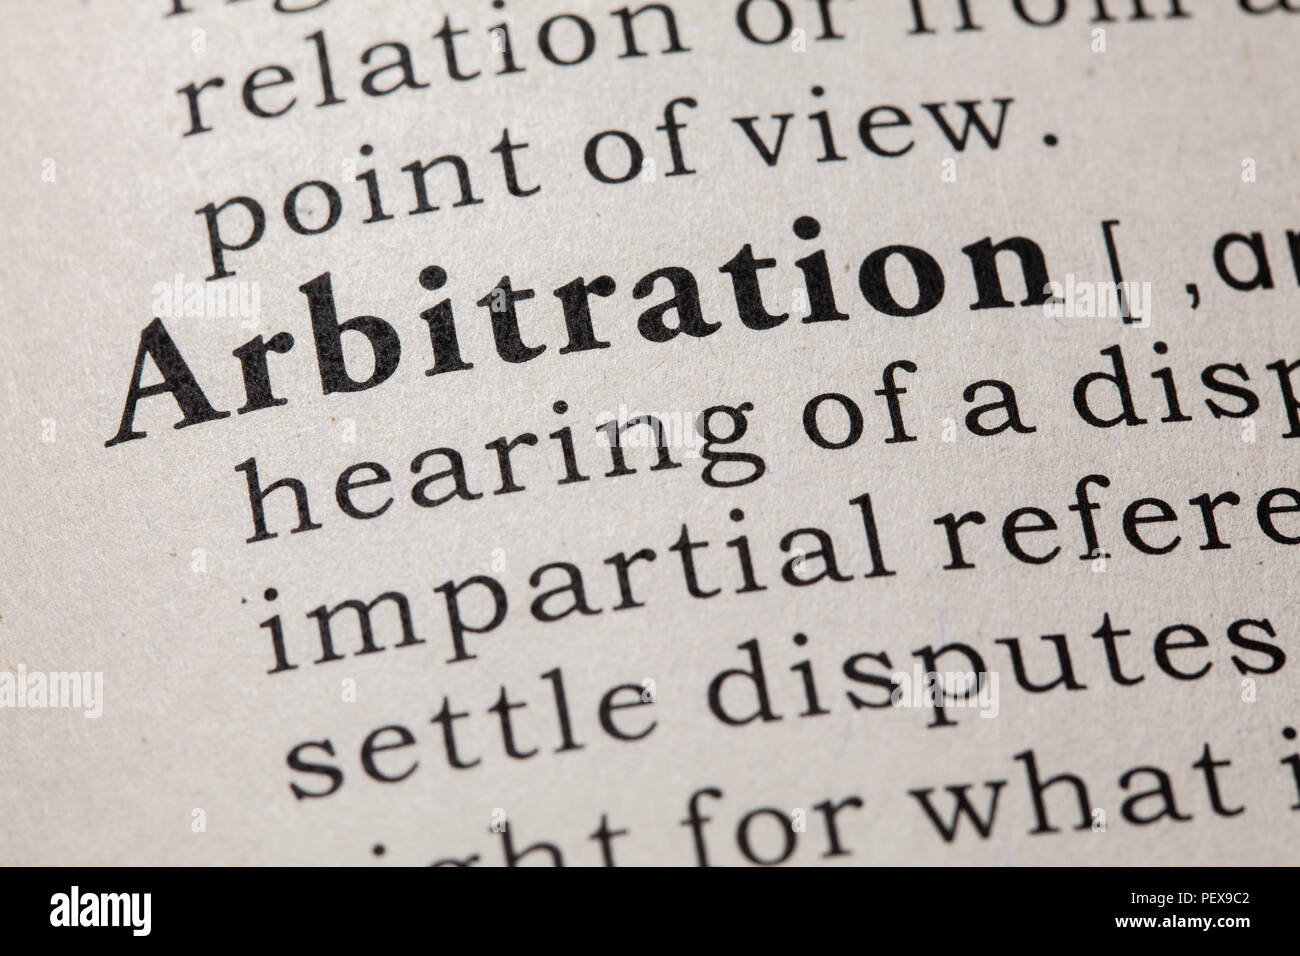 Faux dictionnaire, dictionnaire définition du mot arbitrage. y compris les principaux termes descriptifs. Banque D'Images